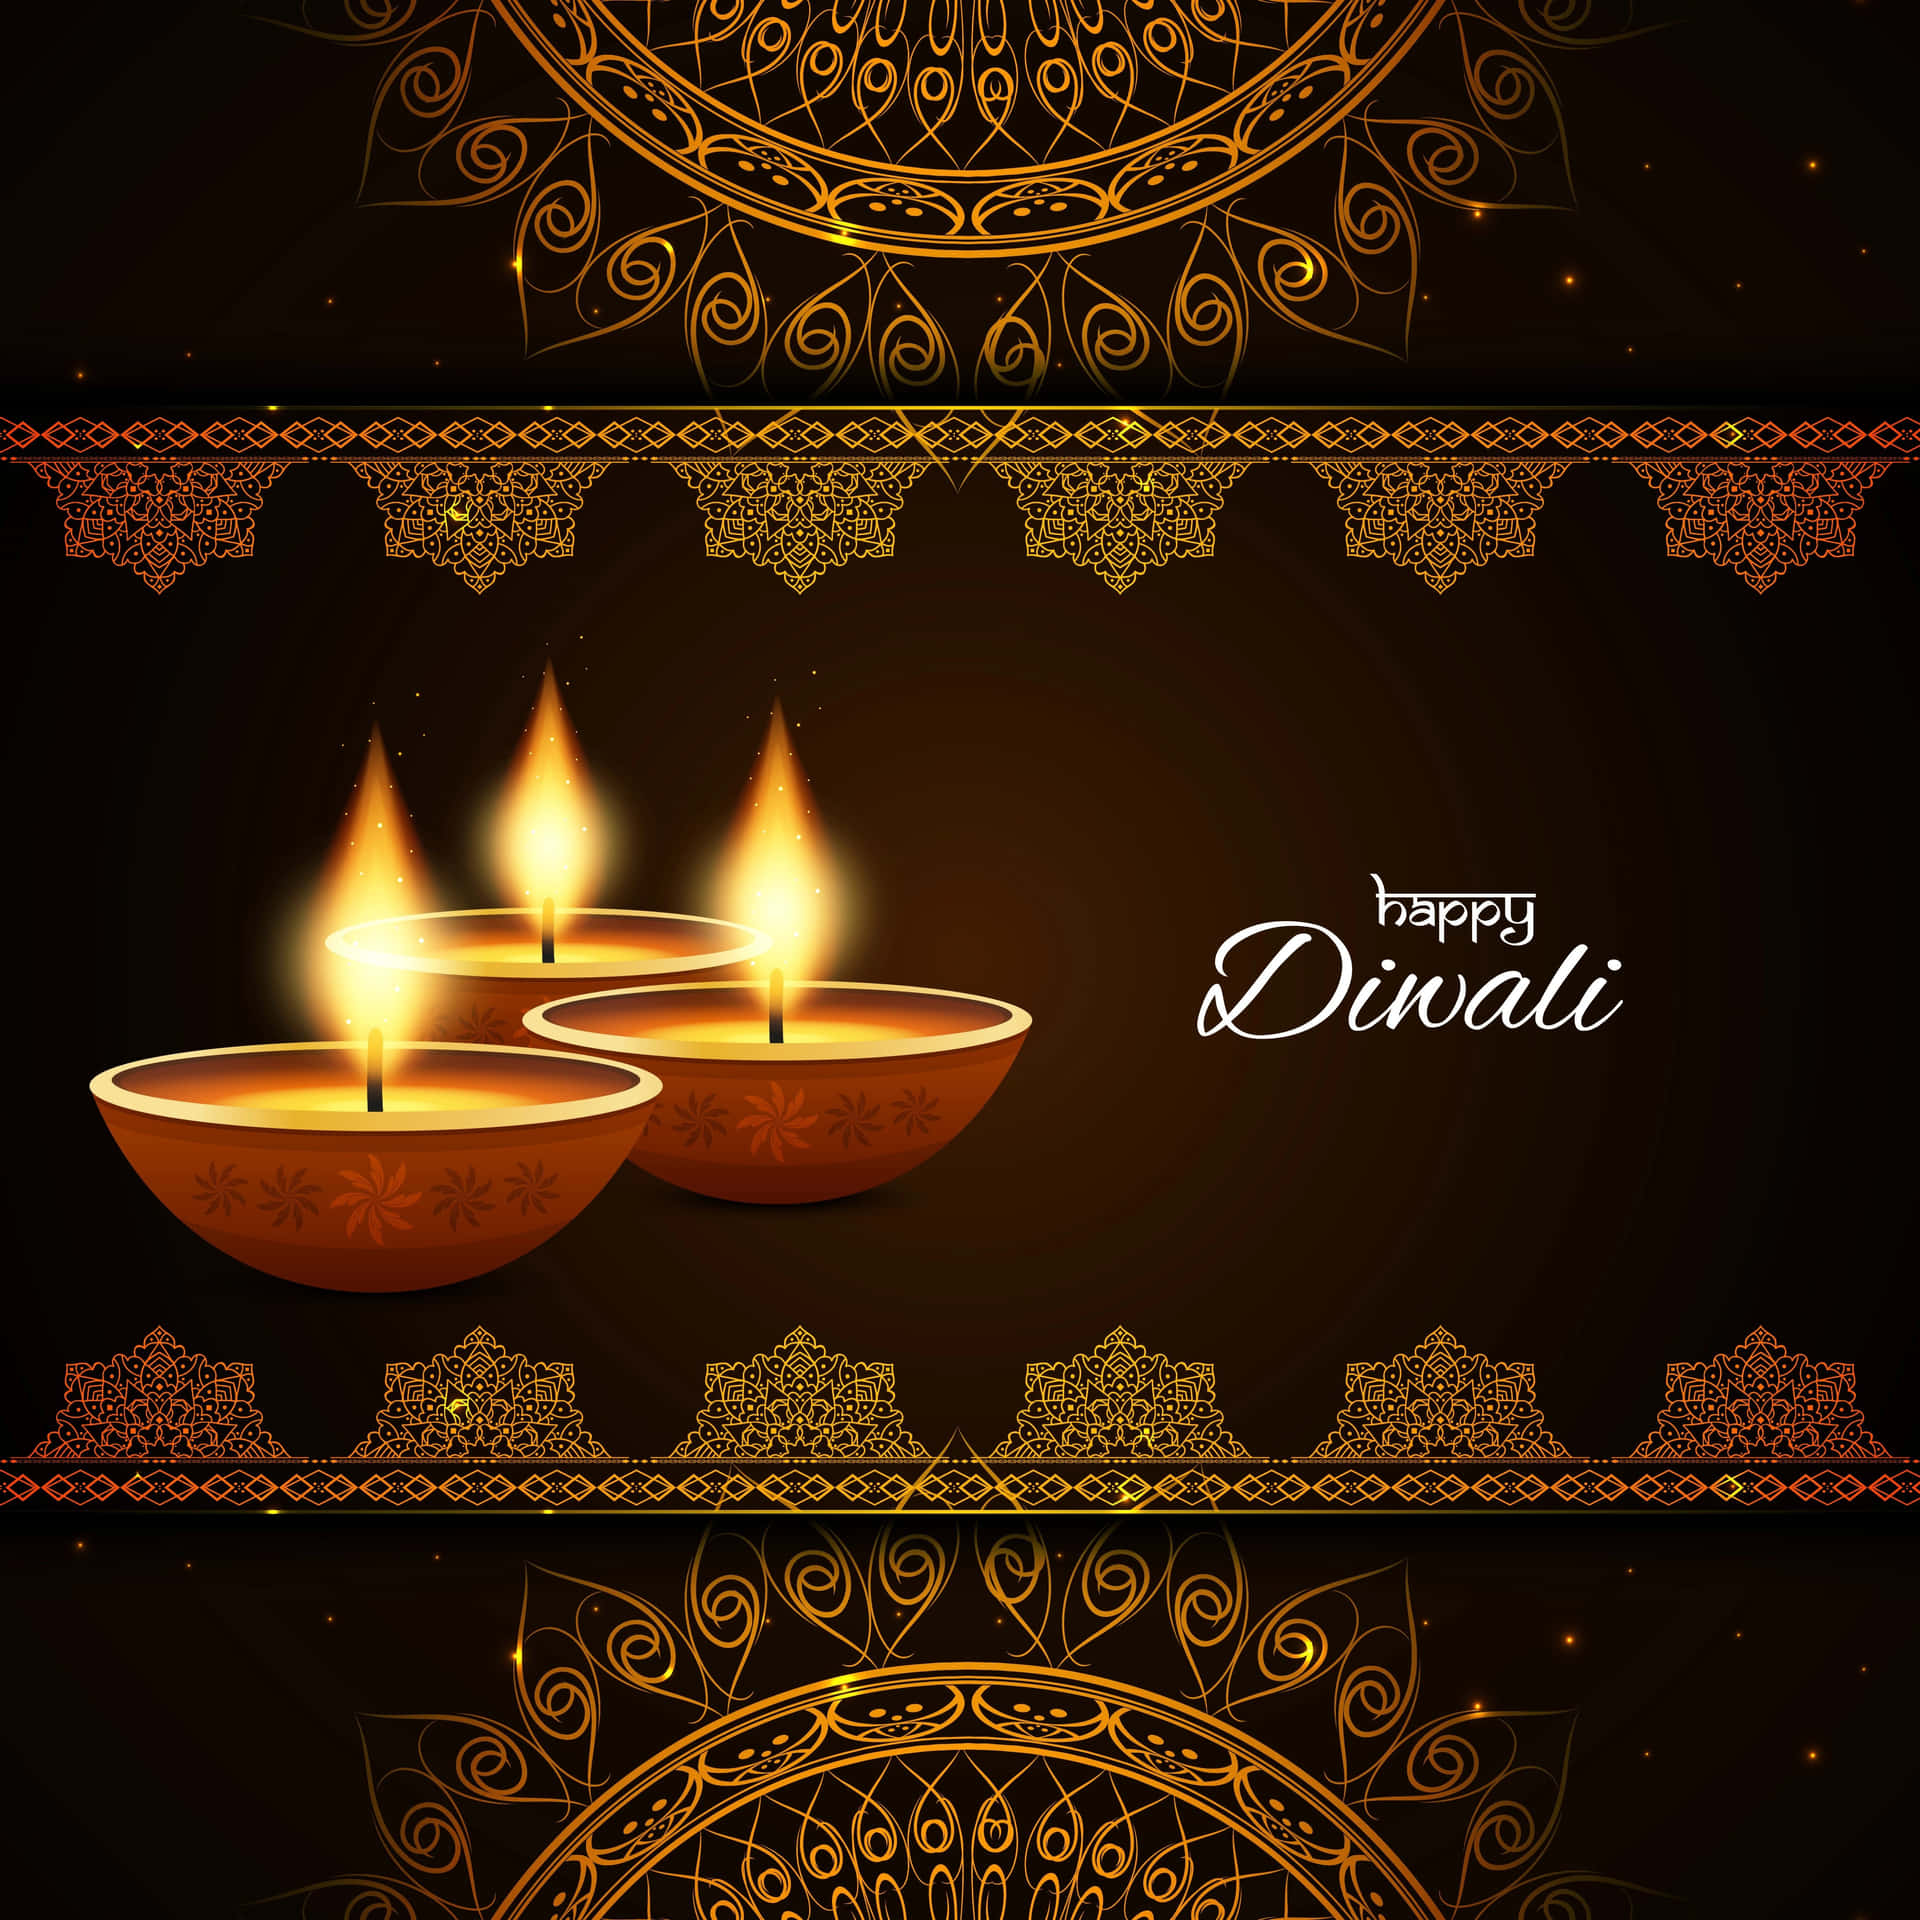 Tarjetade Felicitación De Diwali Con Tres Velas Encendidas.